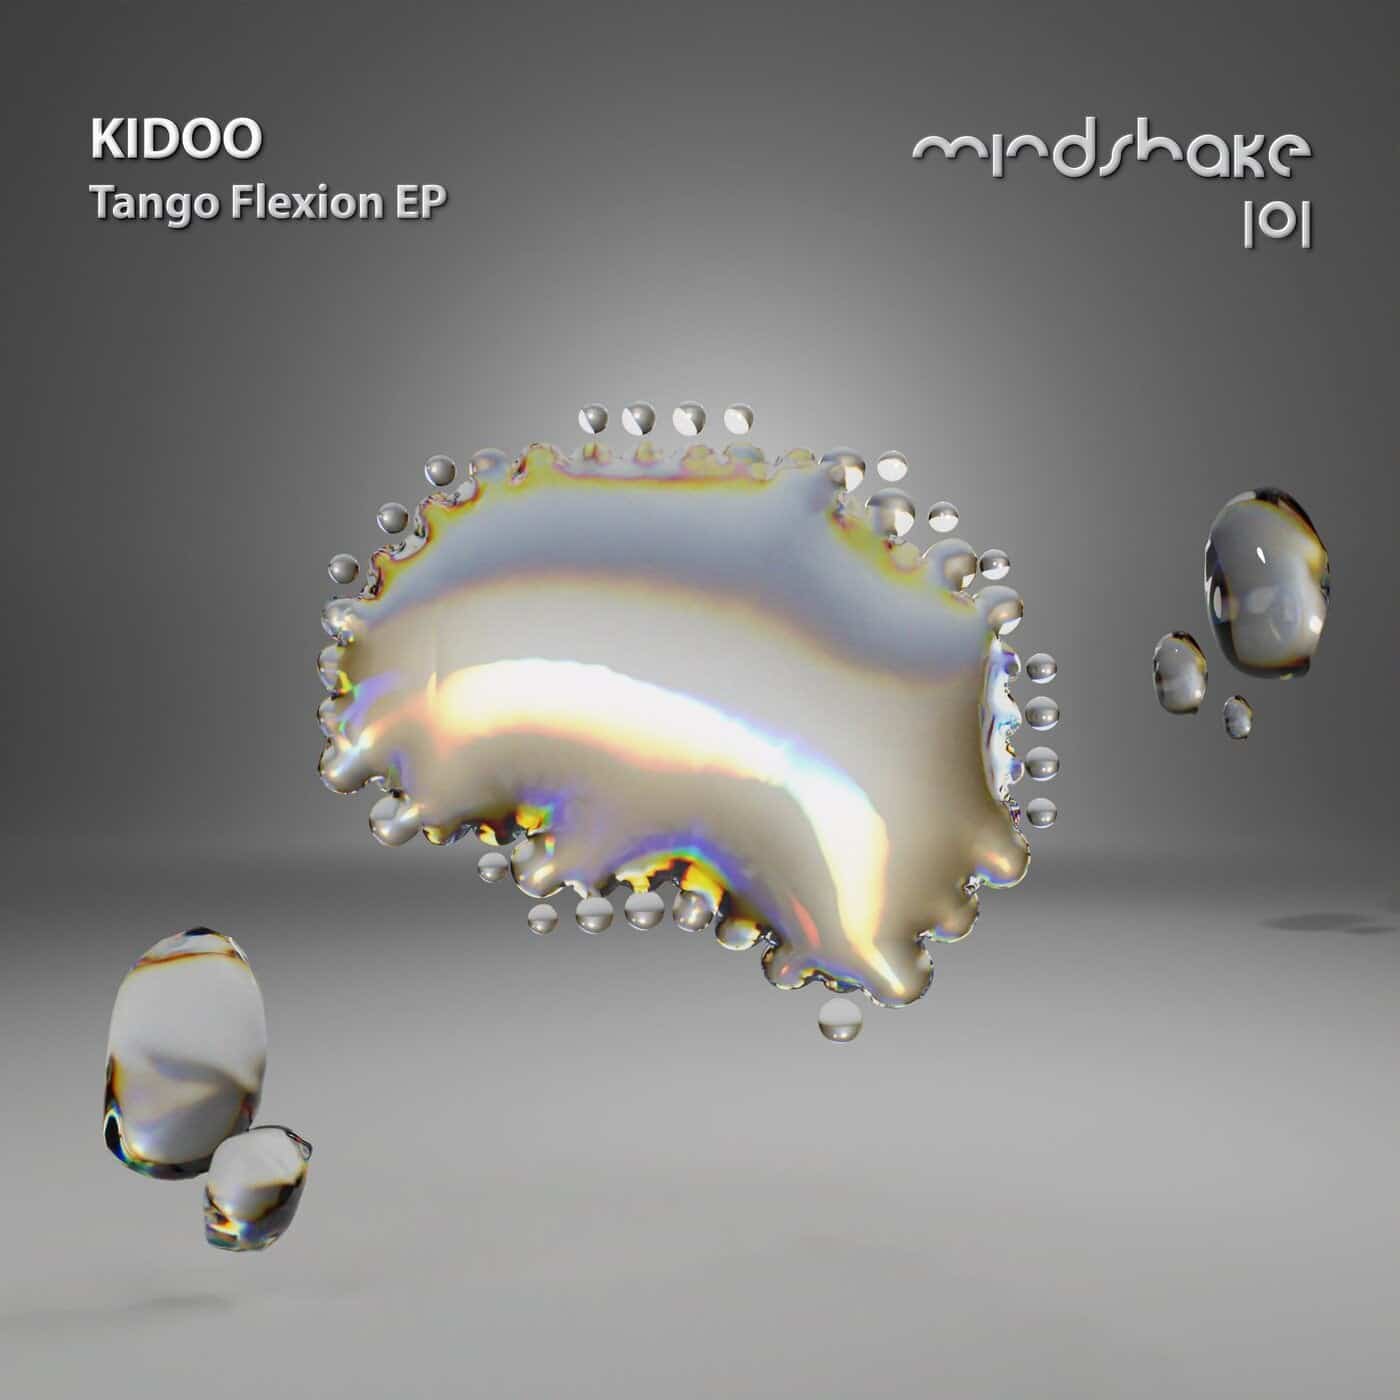 image cover: Kidoo - Tango Flexion / MINDSHAKE101